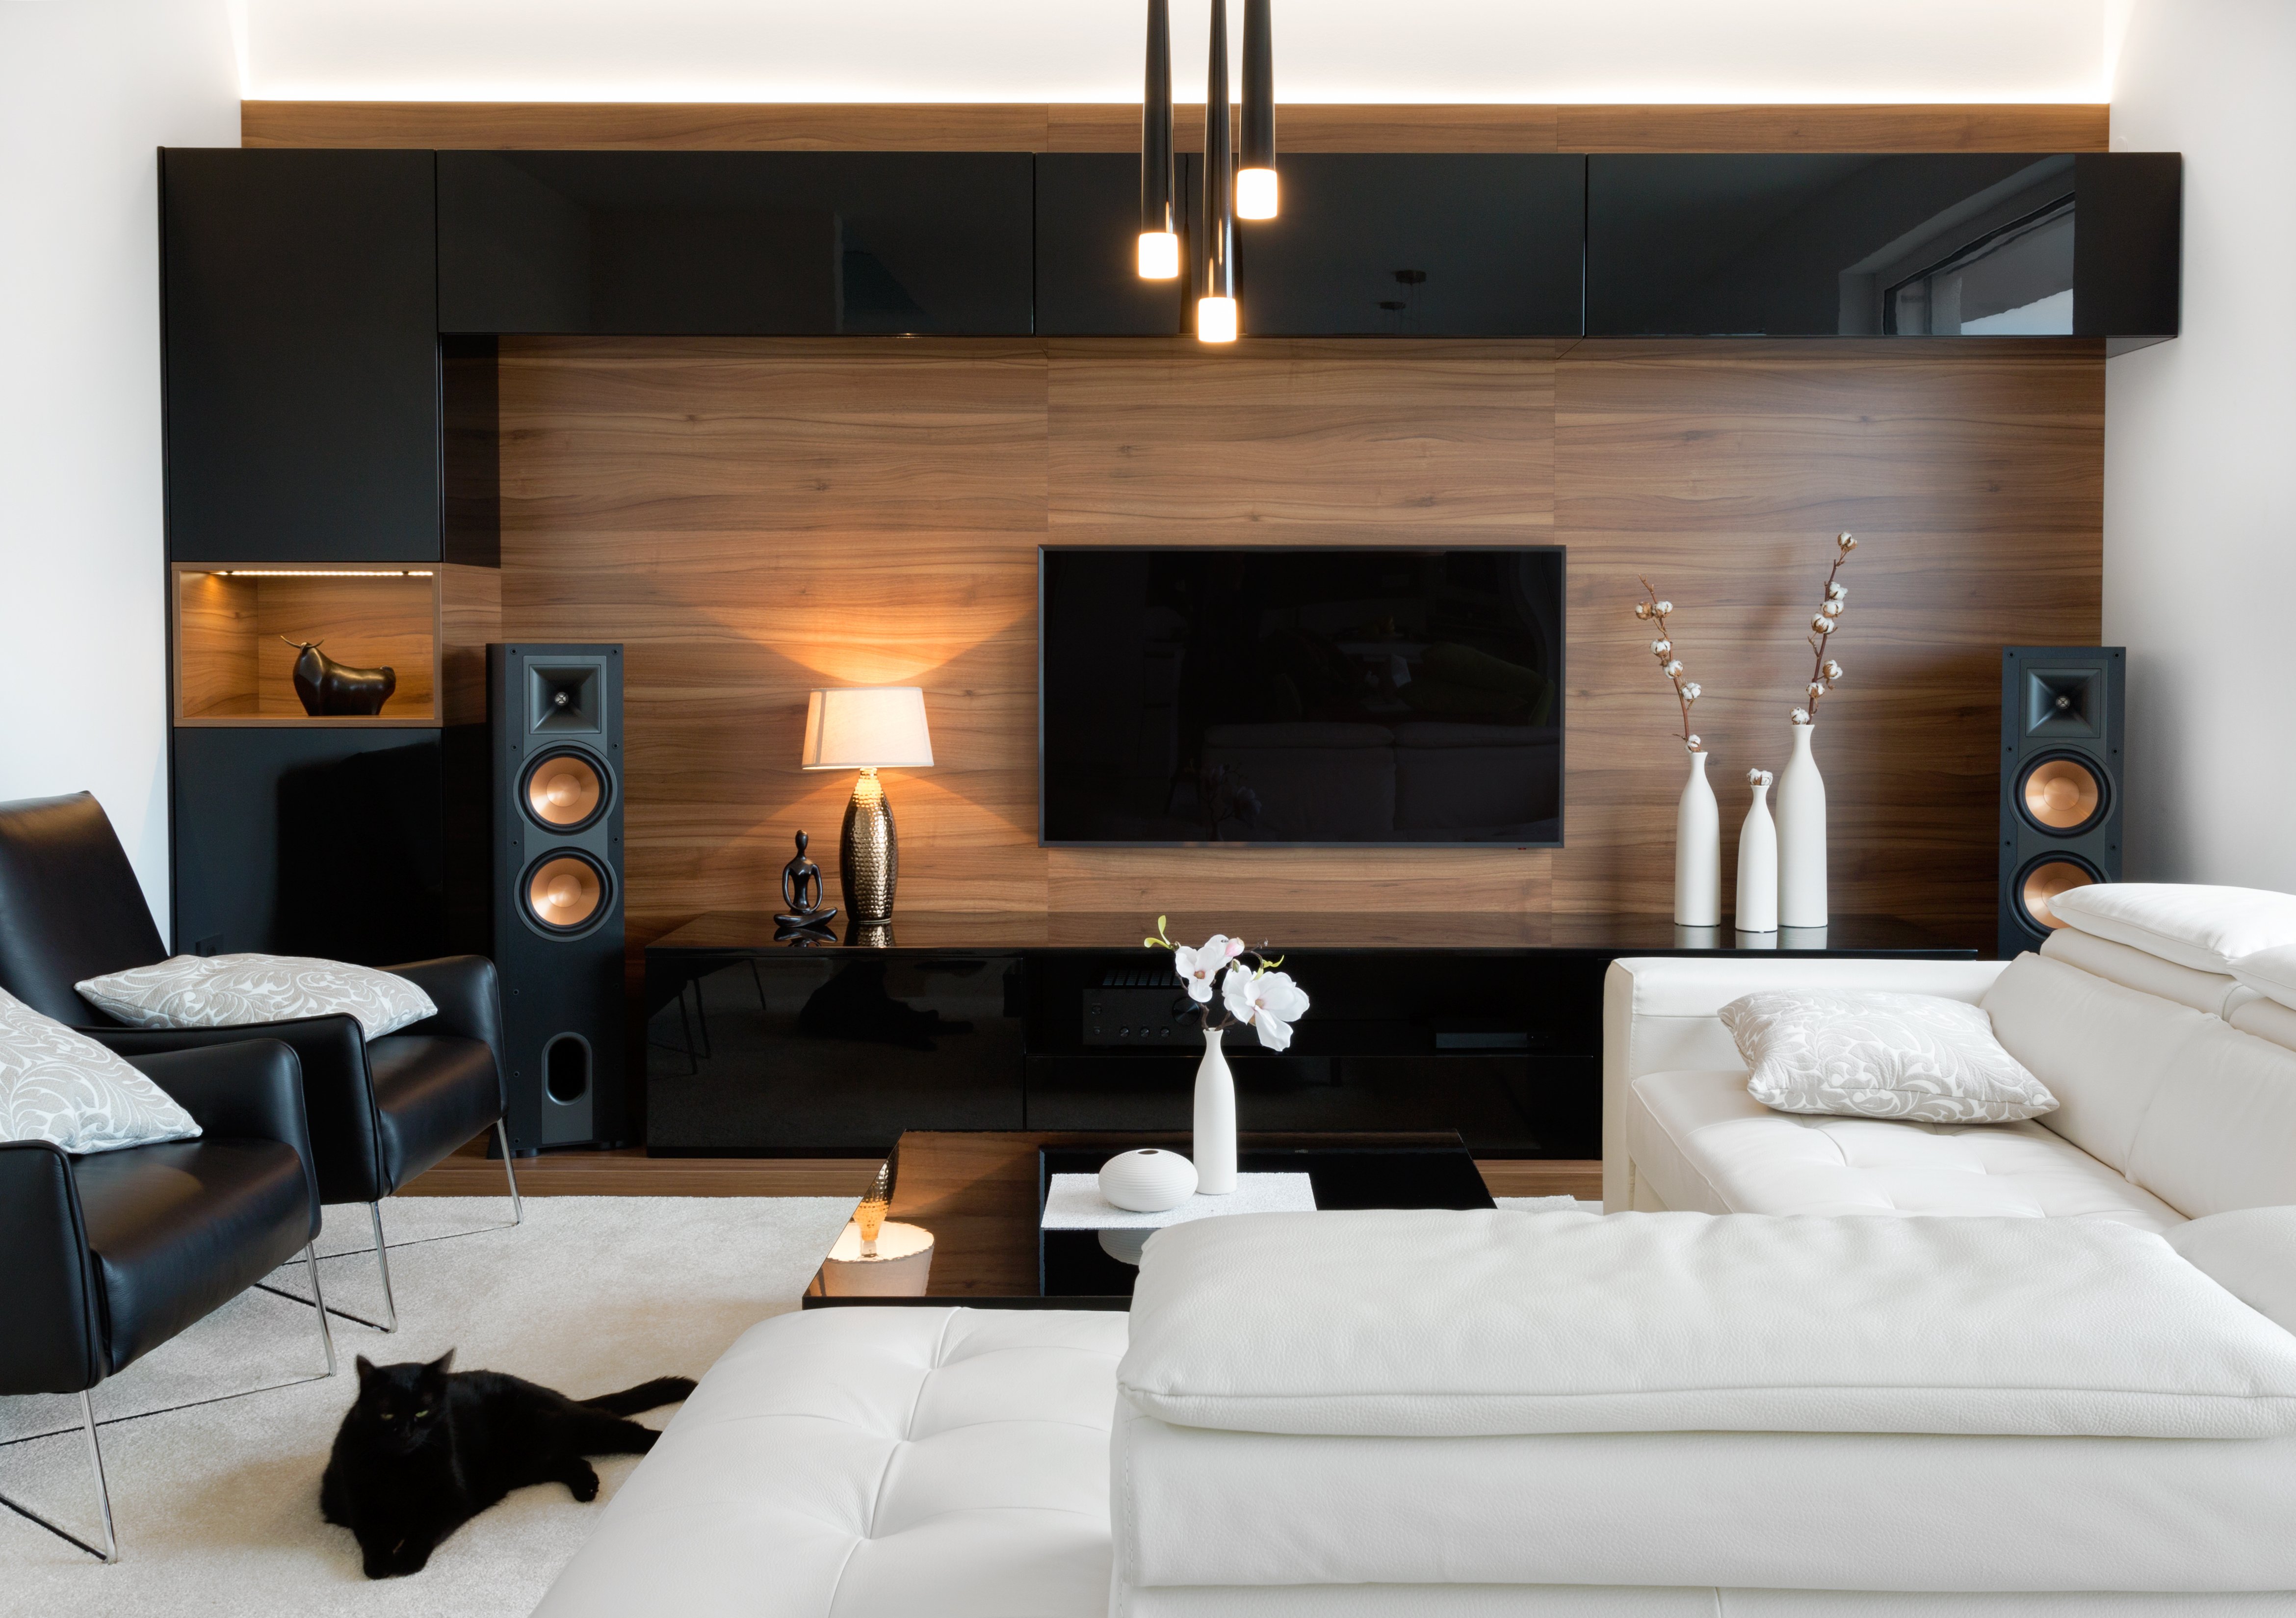 Contemporary Living Room Ideas From Our Designers - HomeLane Blog